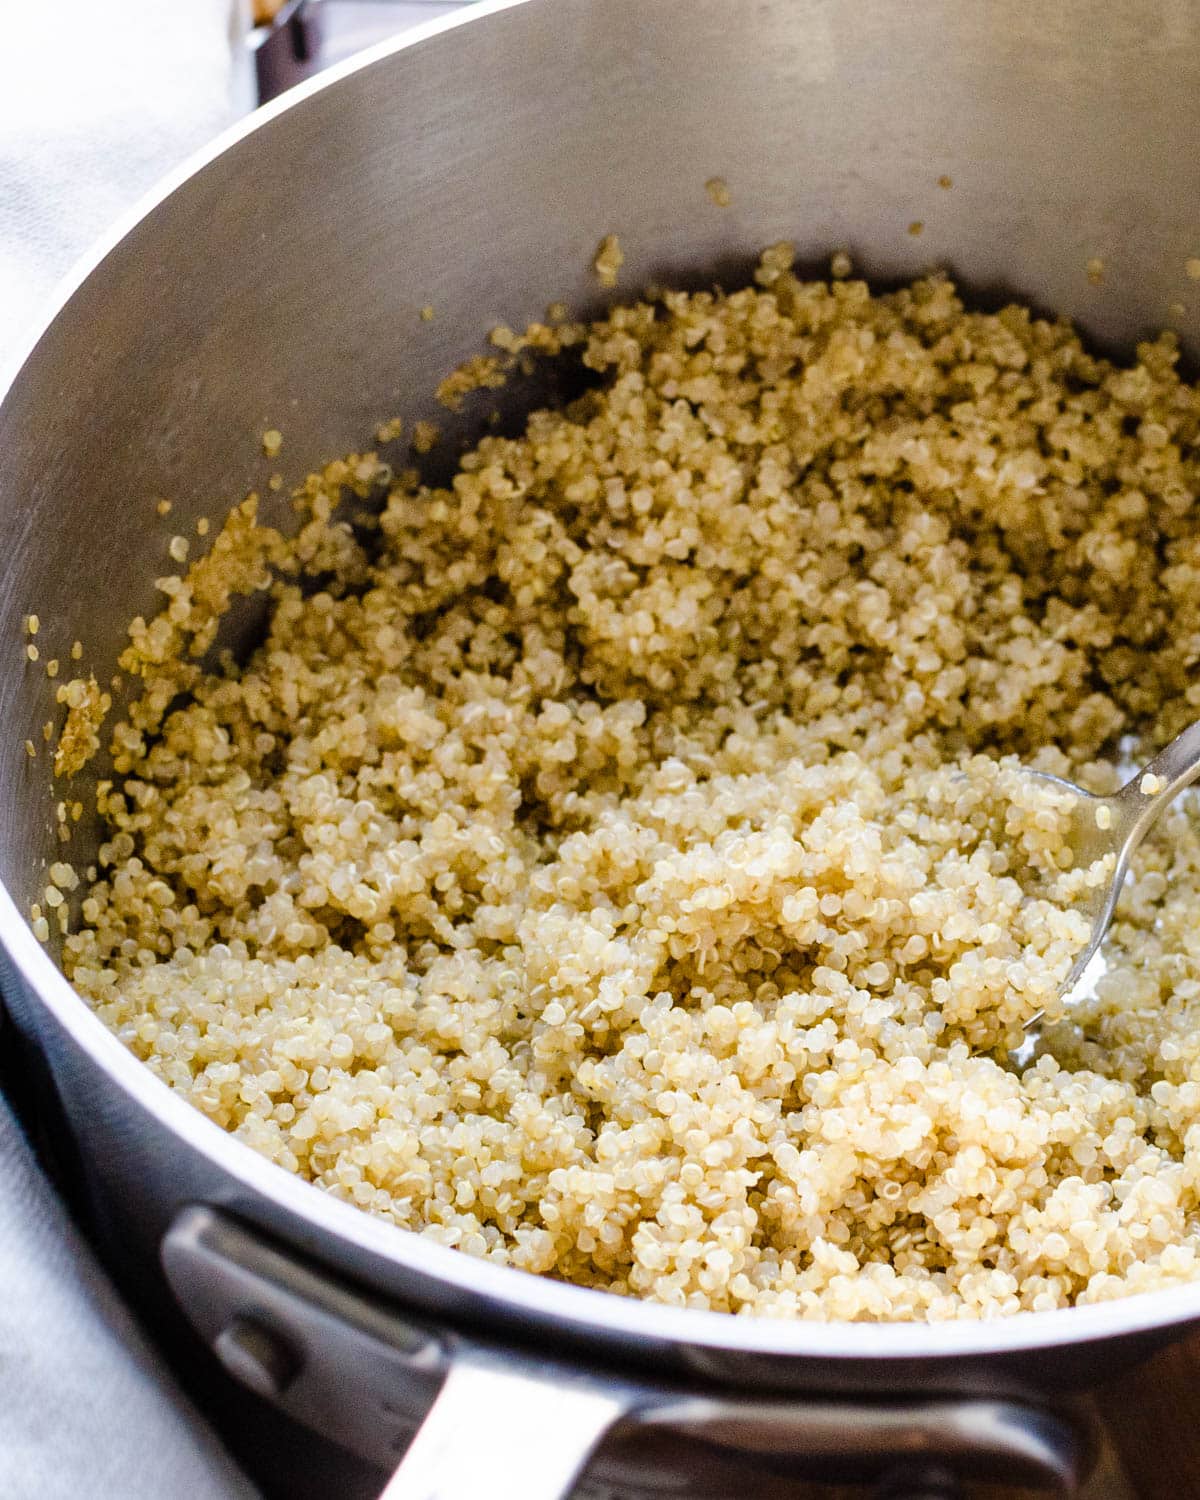 Cook the quinoa